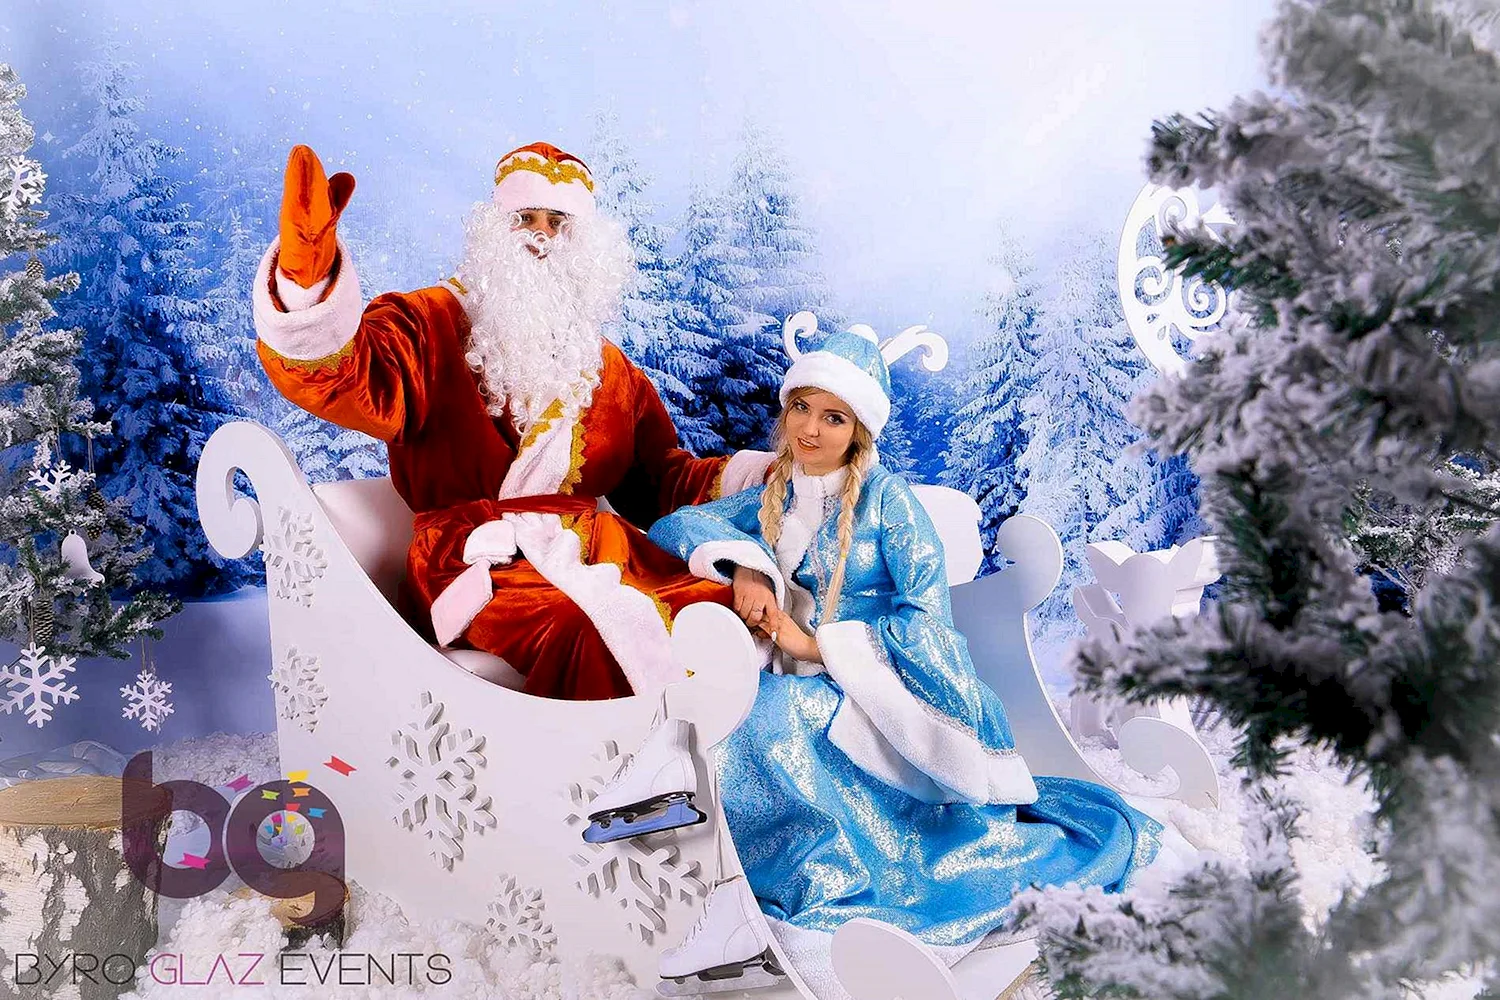 Новогодние дед Мороз и Снегурочка